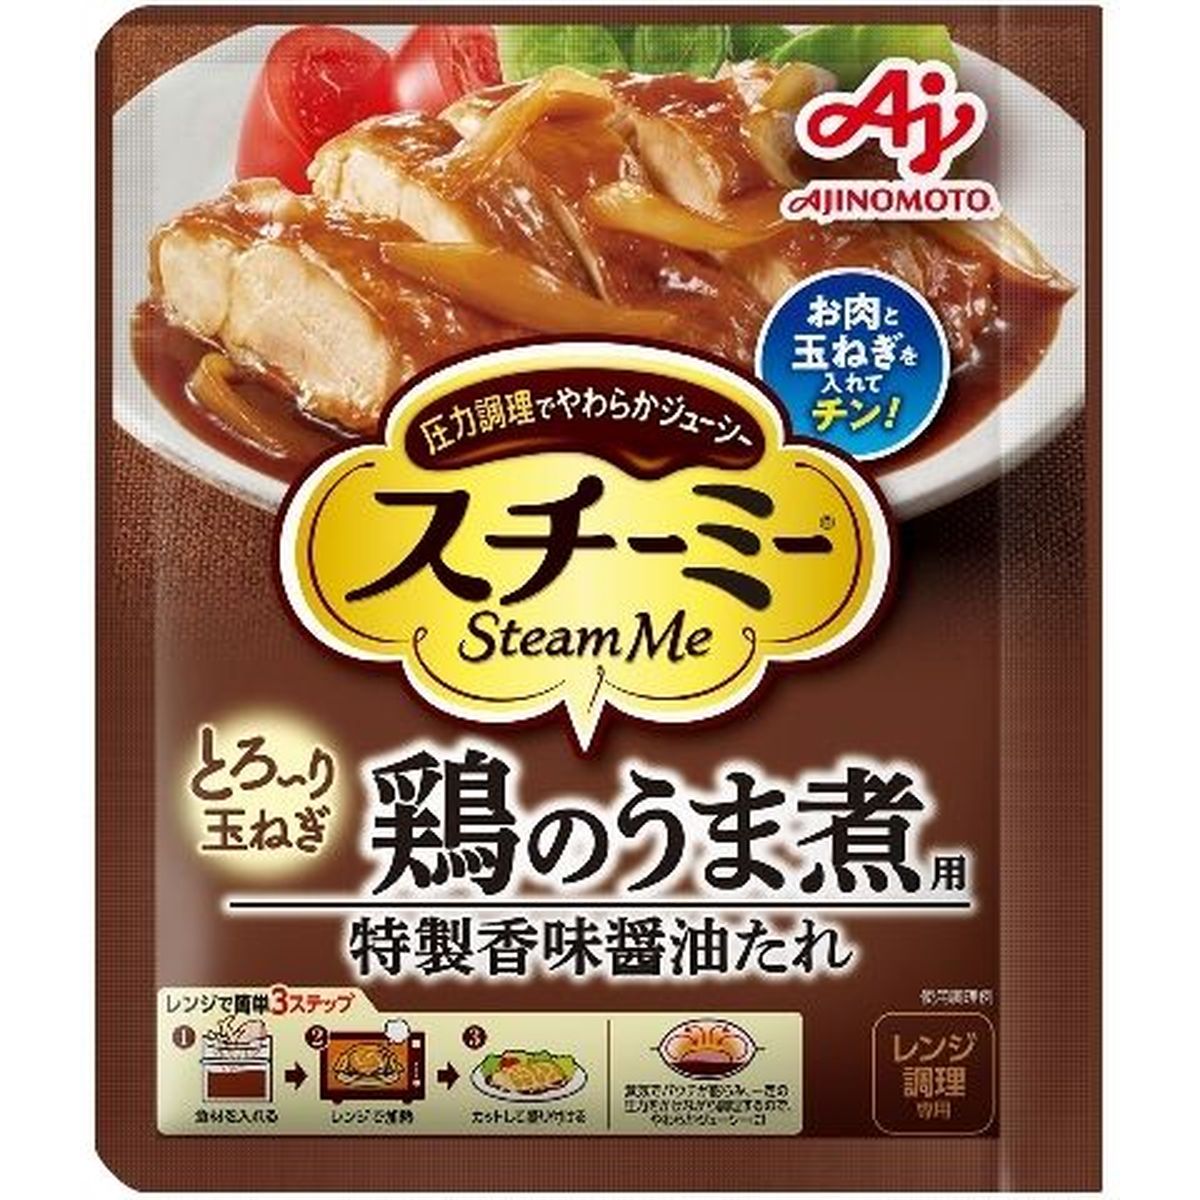 【10個入リ】味ノ素 スチーミー 鶏ノウマ煮用 65g